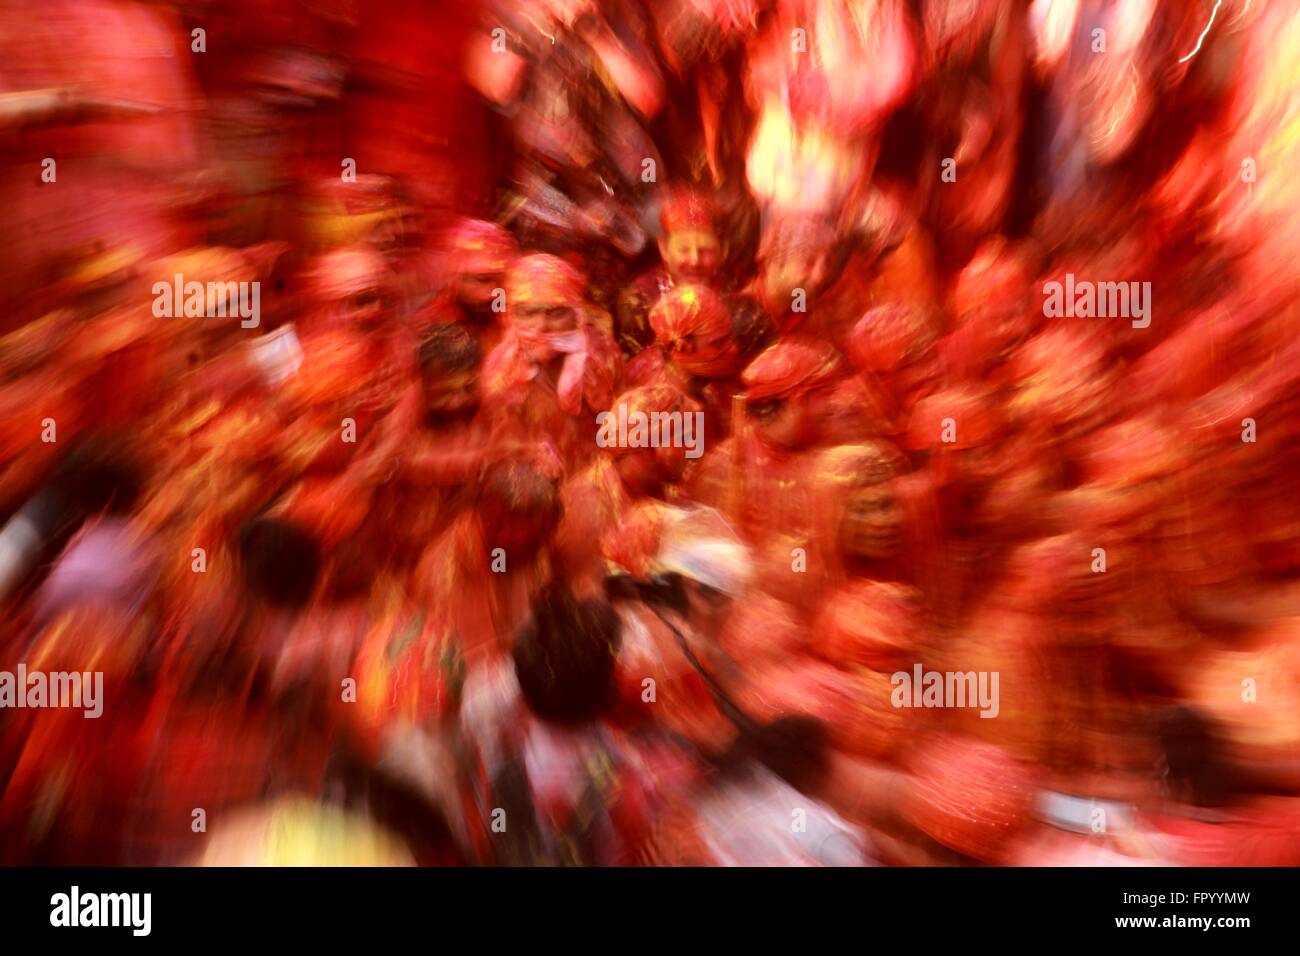 Migliaia di indù gioco devoto Lathmar holi in Nandgaon, Mathura, India. Lathmar è una celebrazione locale del festival indù di holi. Essa avviene in giorni prima della reale Holi nelle vicine città di Barsana e vicino Nandgaon Mathura nello stato di Uttar Pradesh, dove migliaia di indù e i turisti si radunano ogni anno. (Foto di Shashi Sharma / Pacific Stampa) Foto Stock